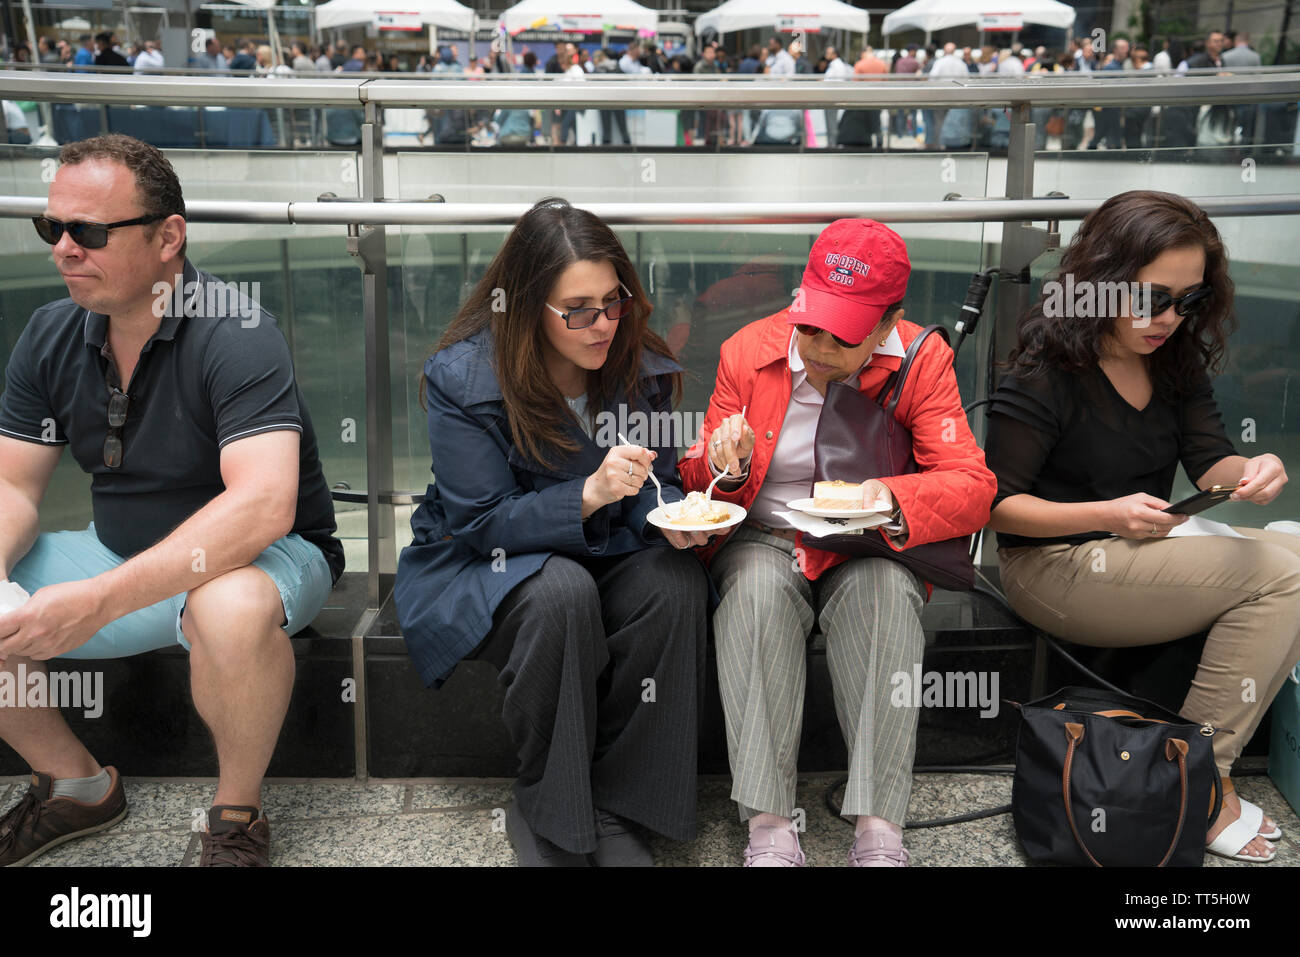 Frauen essen in Essen in der Innenstadt herum, ein jährliches Festival in der Lower Manhattan restaurants Proben von ihren Speisekarten heruntergesetzte verkaufen. Stockfoto